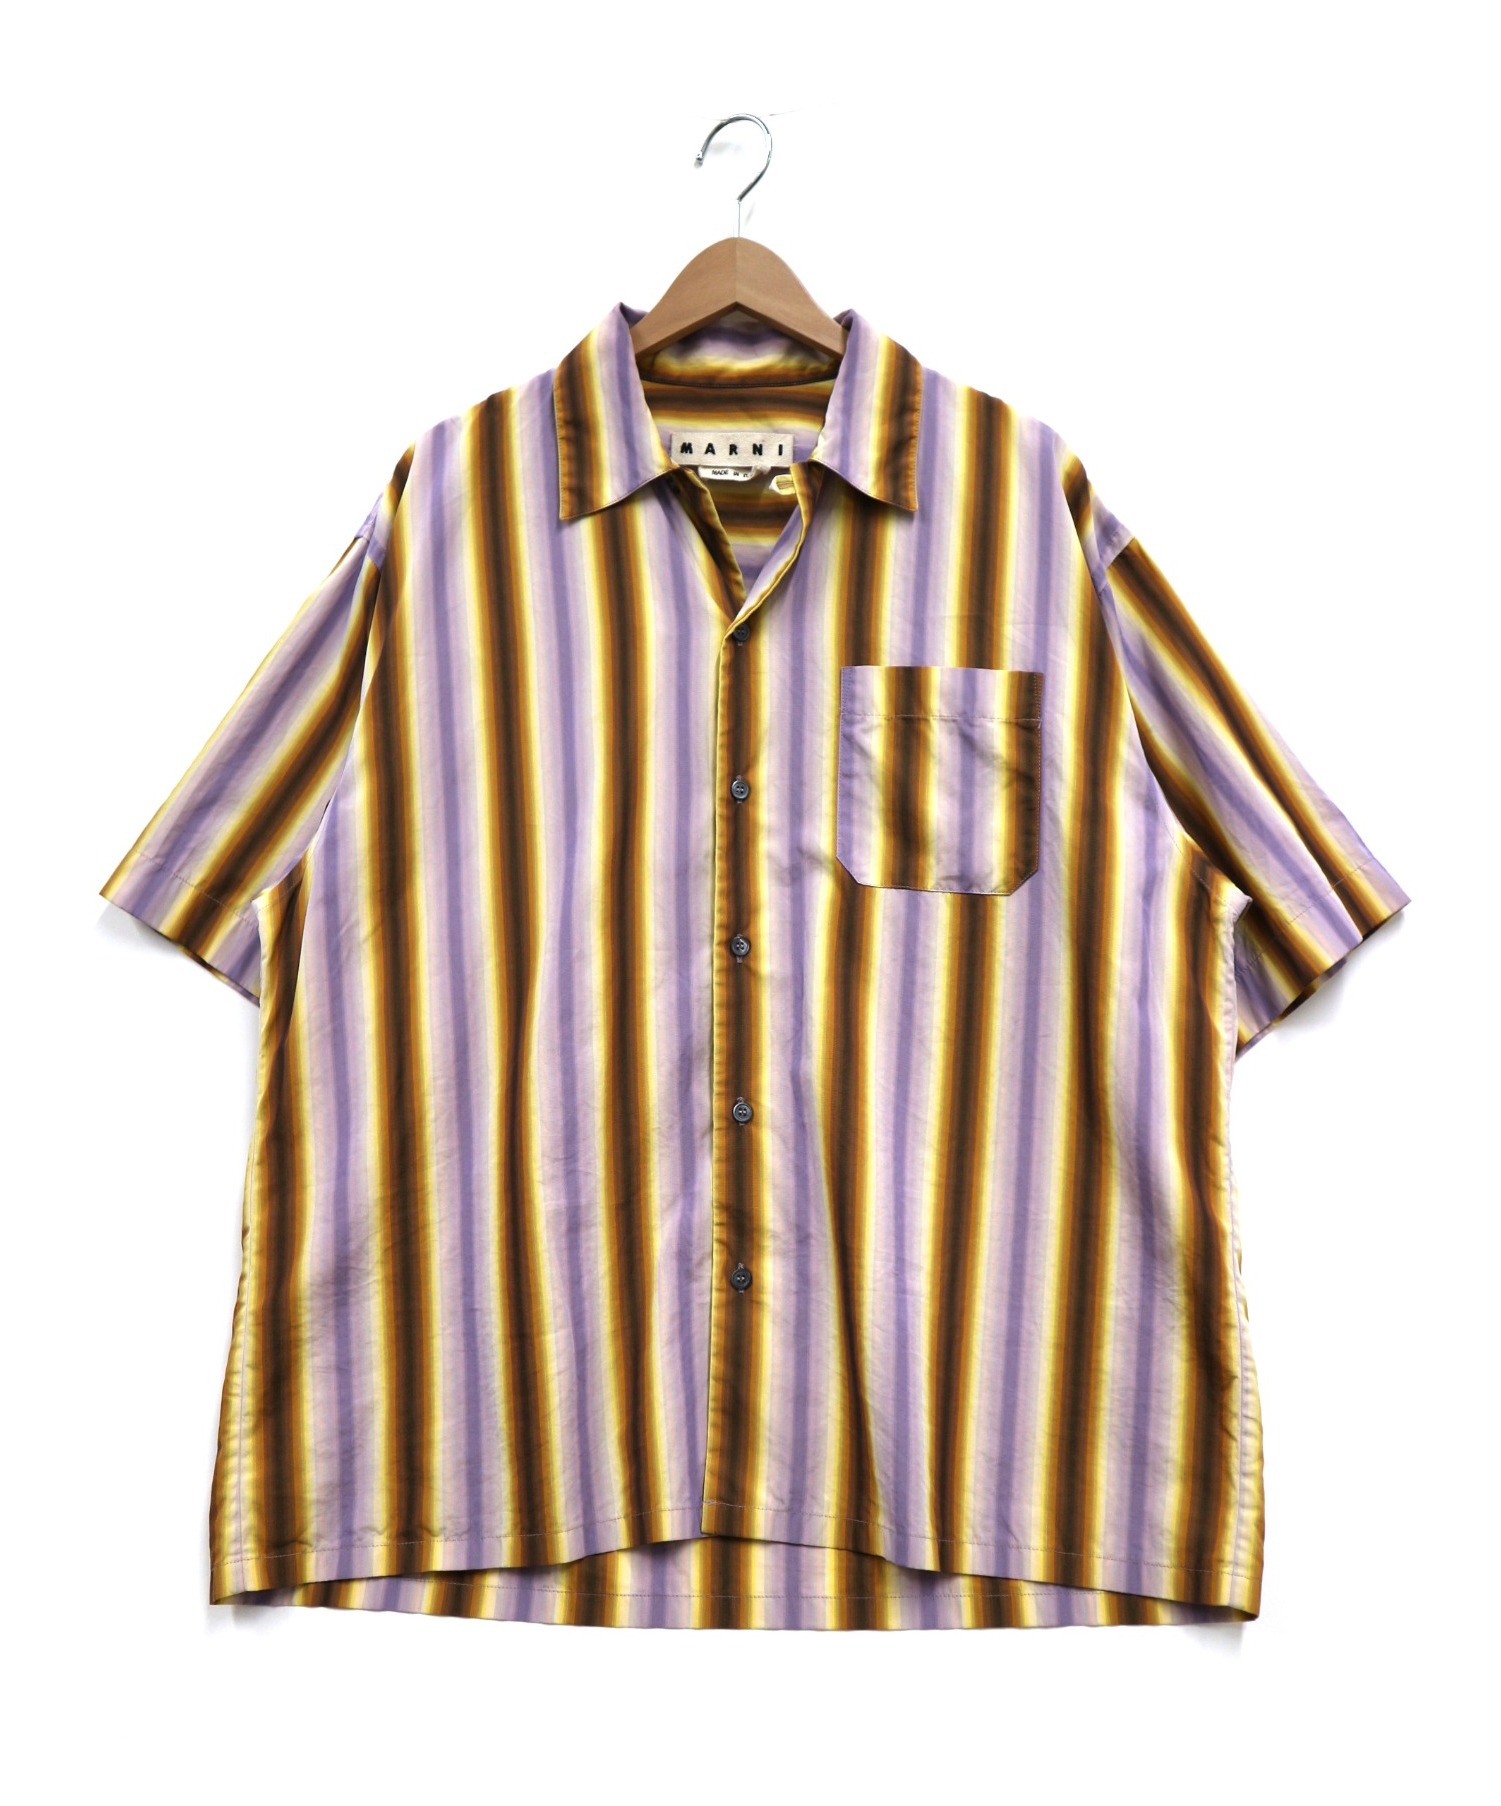 MARNI (マルニ) オープンカラーシャツ パープル×ブラウン サイズ:48 19SS